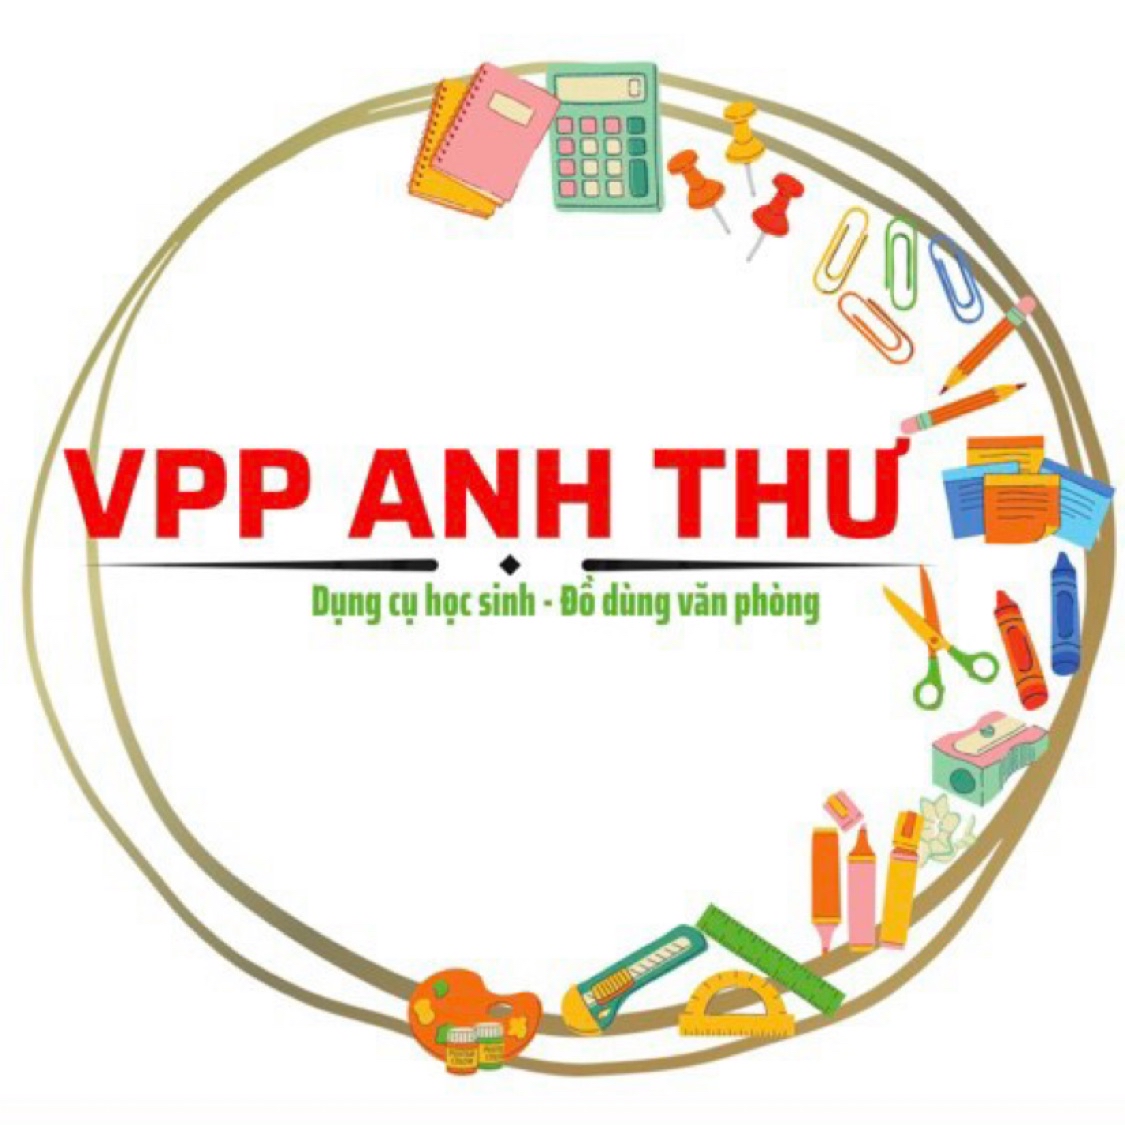 VĂN PHÒNG PHẨM ANH THƯ -TP